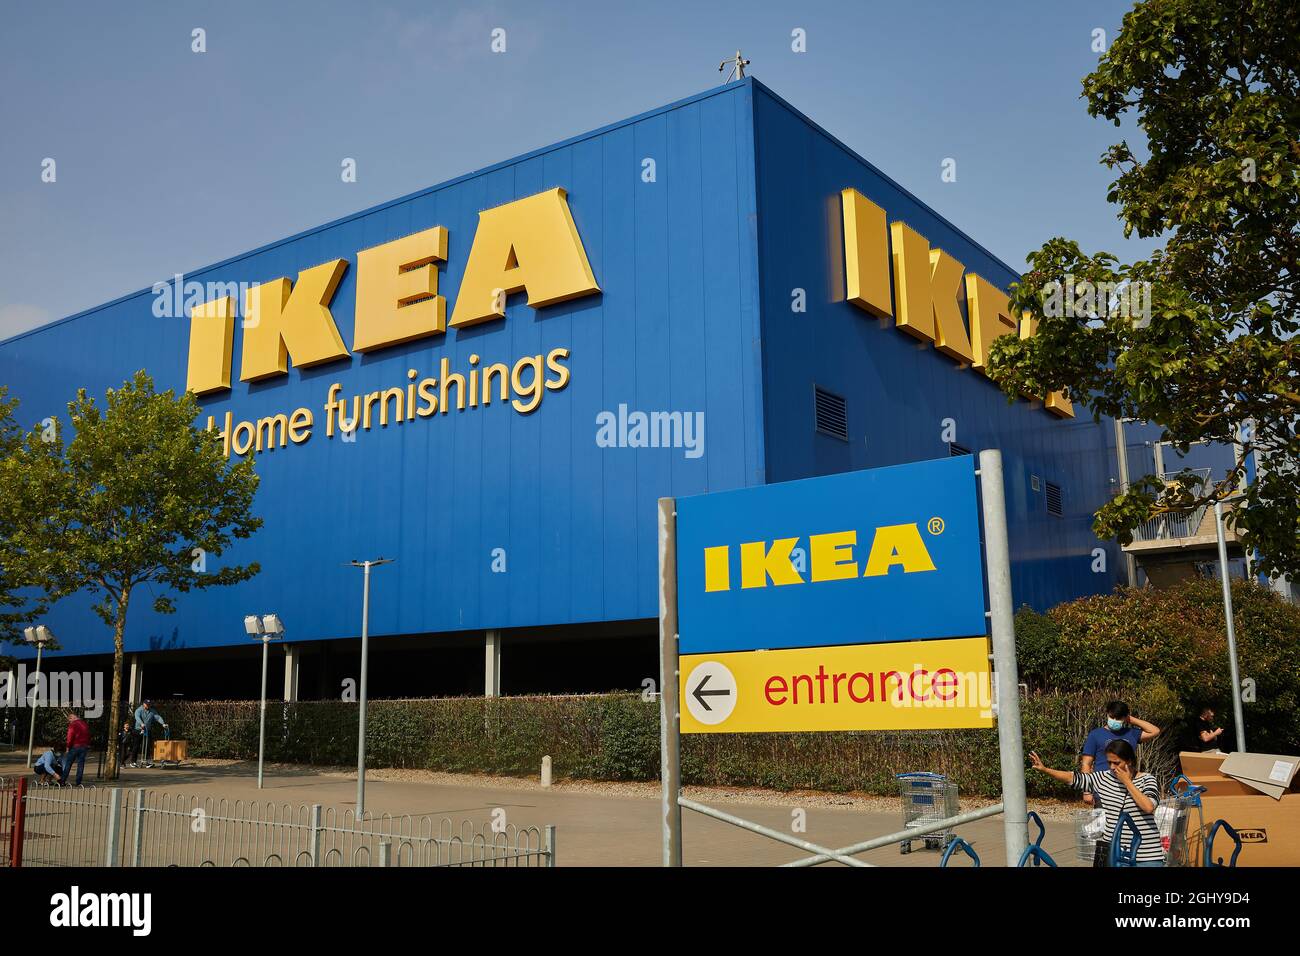 DUBLIN - IRELAND - SEP-04-2021 IKEA Store in Dubin Ireland. Stock Photo